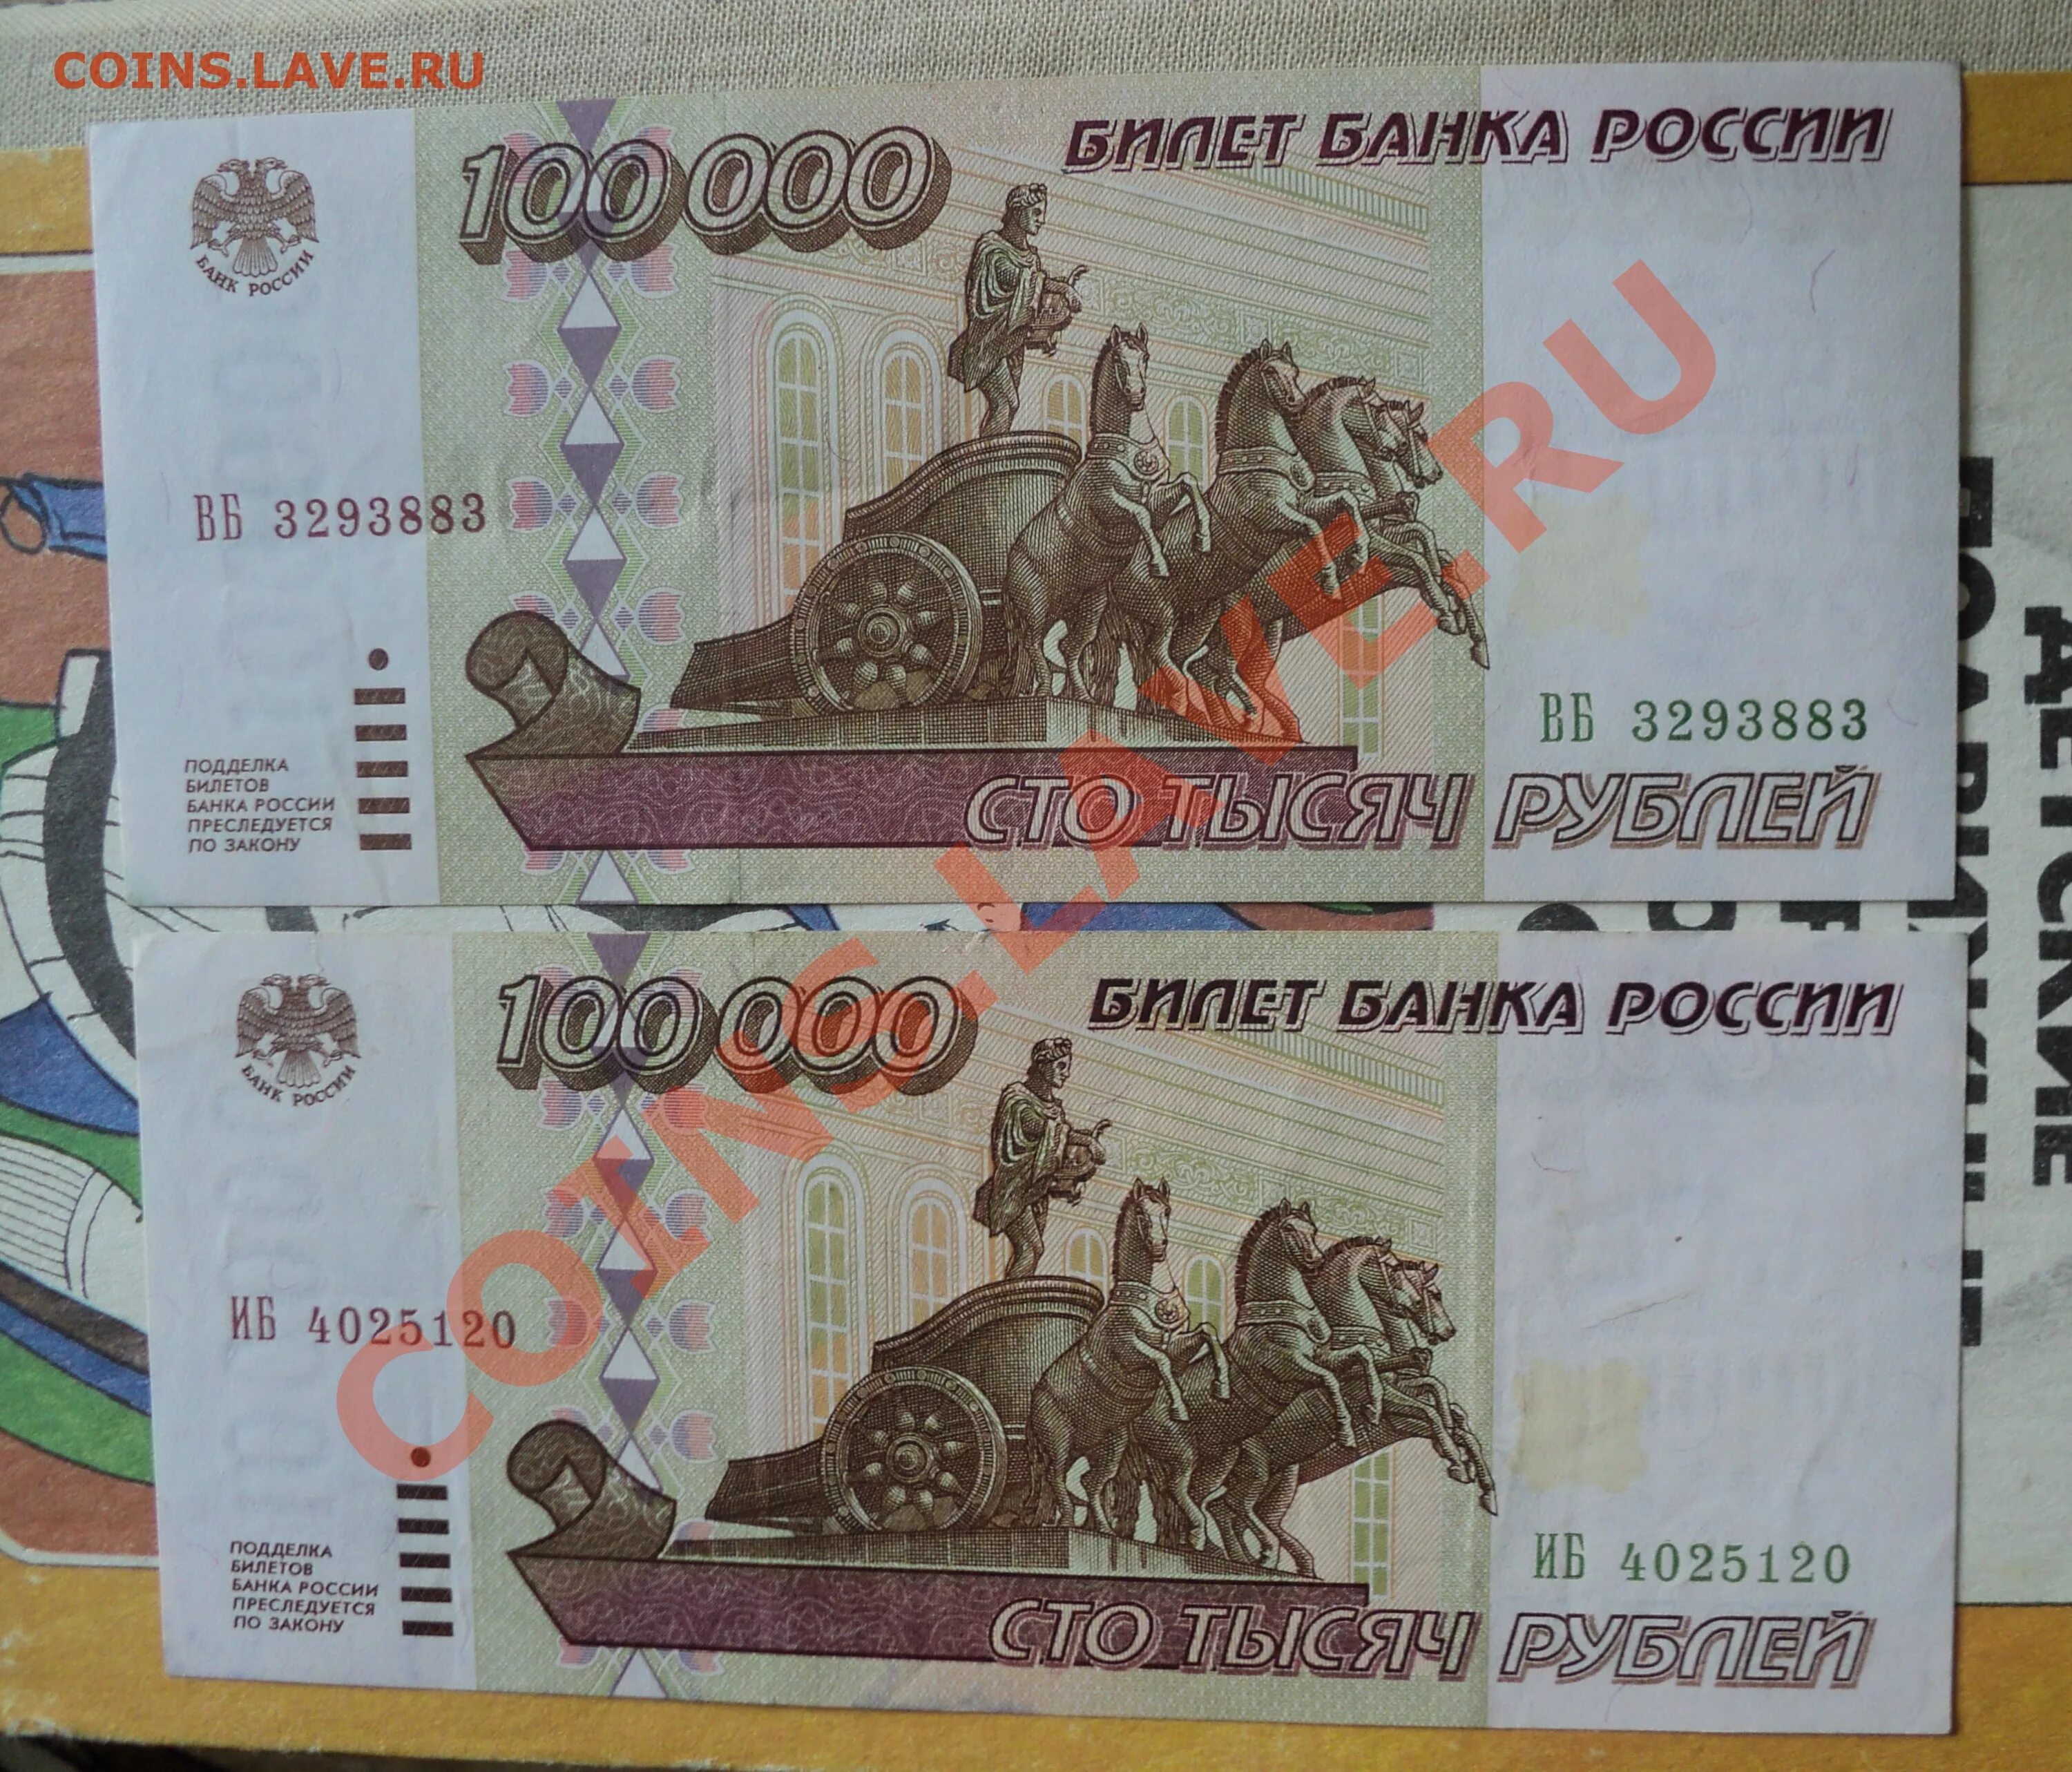 100000 Рублей 1995. Билет банка России 100000 рублей 1995 года. 100000 Киевских рублей на 1995 год. 100000 Рублей 1995 пдф радар.